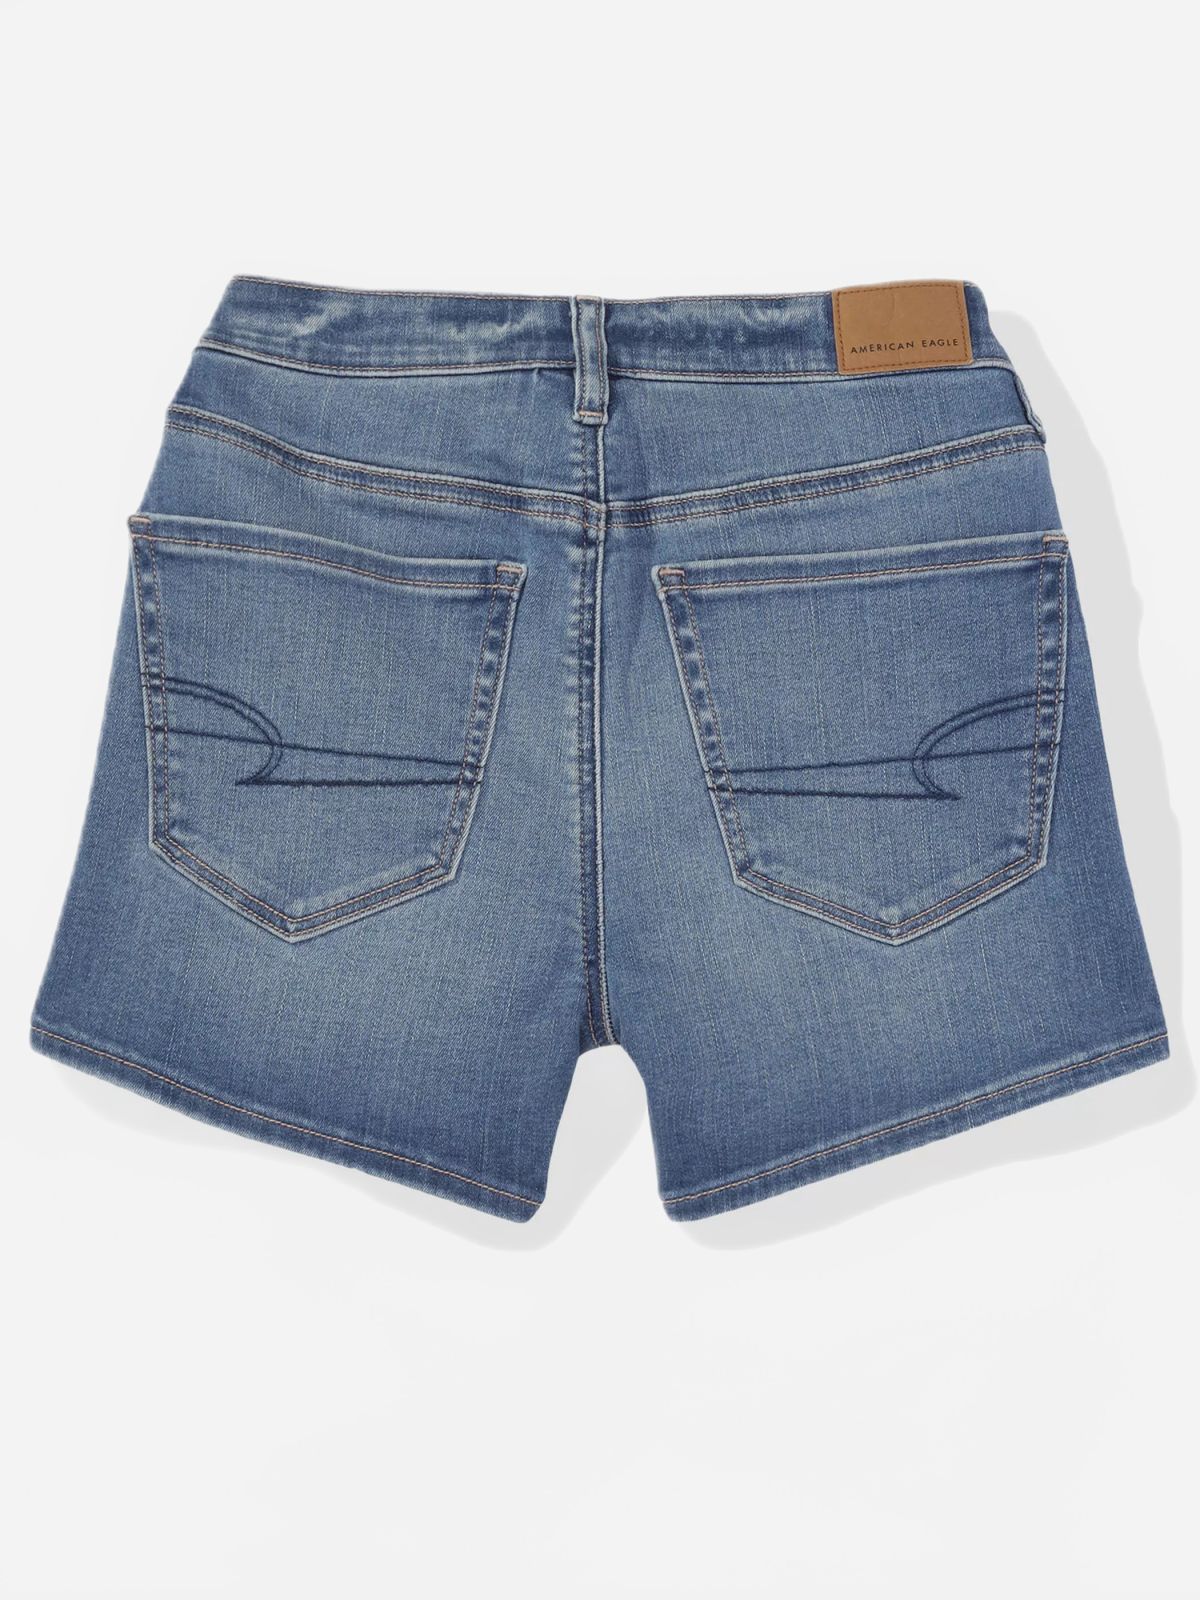  ג'ינס קצר בסיומת קיפולים של AMERICAN EAGLE